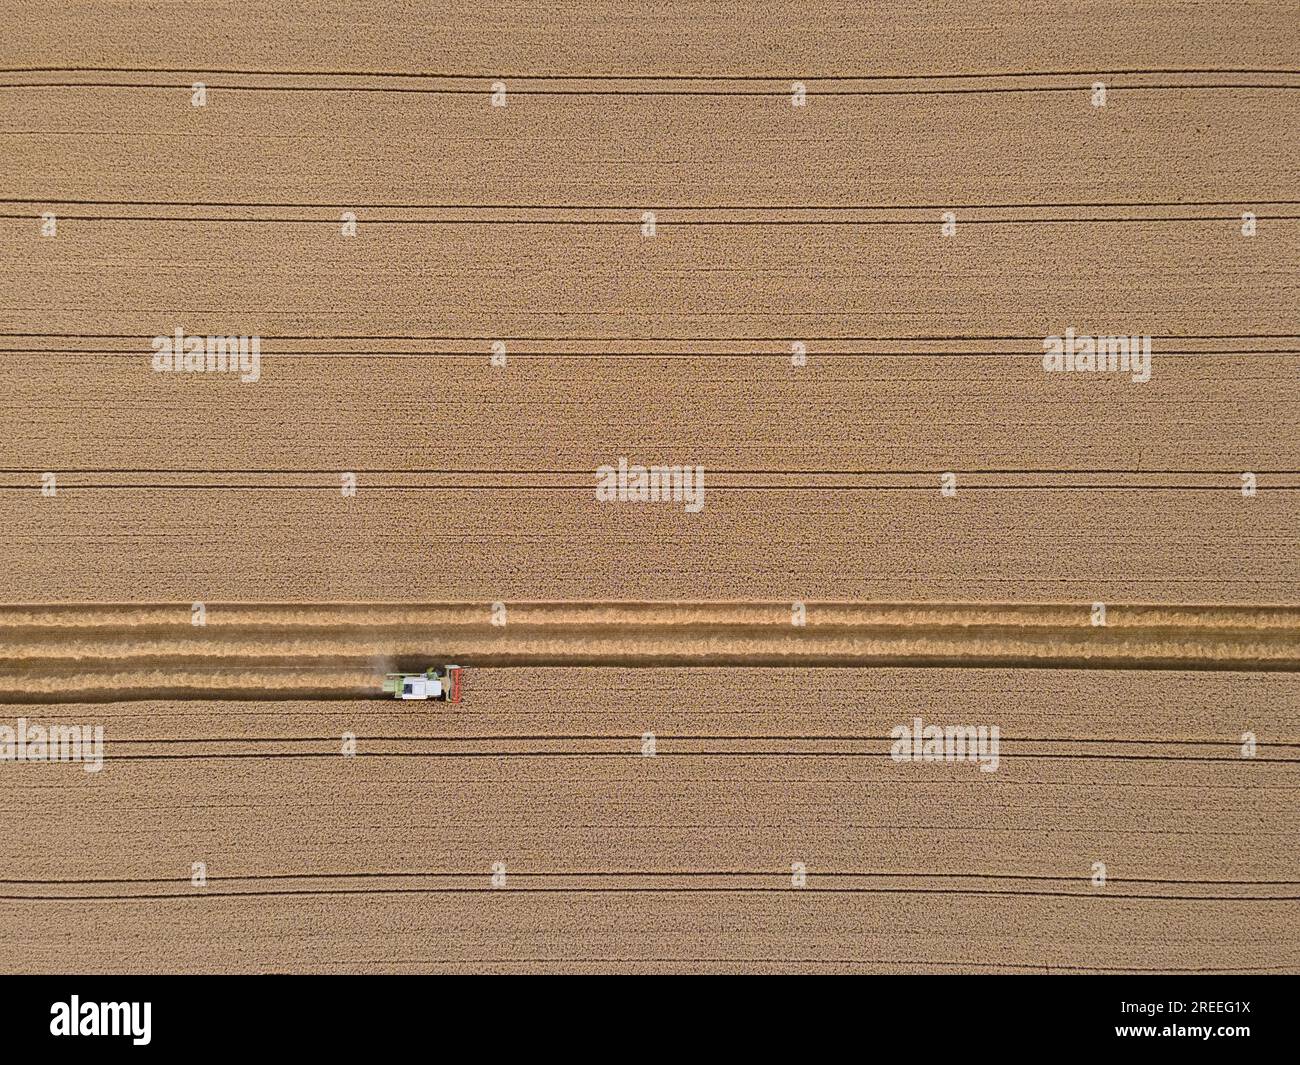 Ein Mähdrescher erntet ein Getreidefeld in der Nähe von Frankfurt am Main. (Luftaufnahme mit einer Drohne), Frankfurt am Main, Hessen, Deutschland Stockfoto